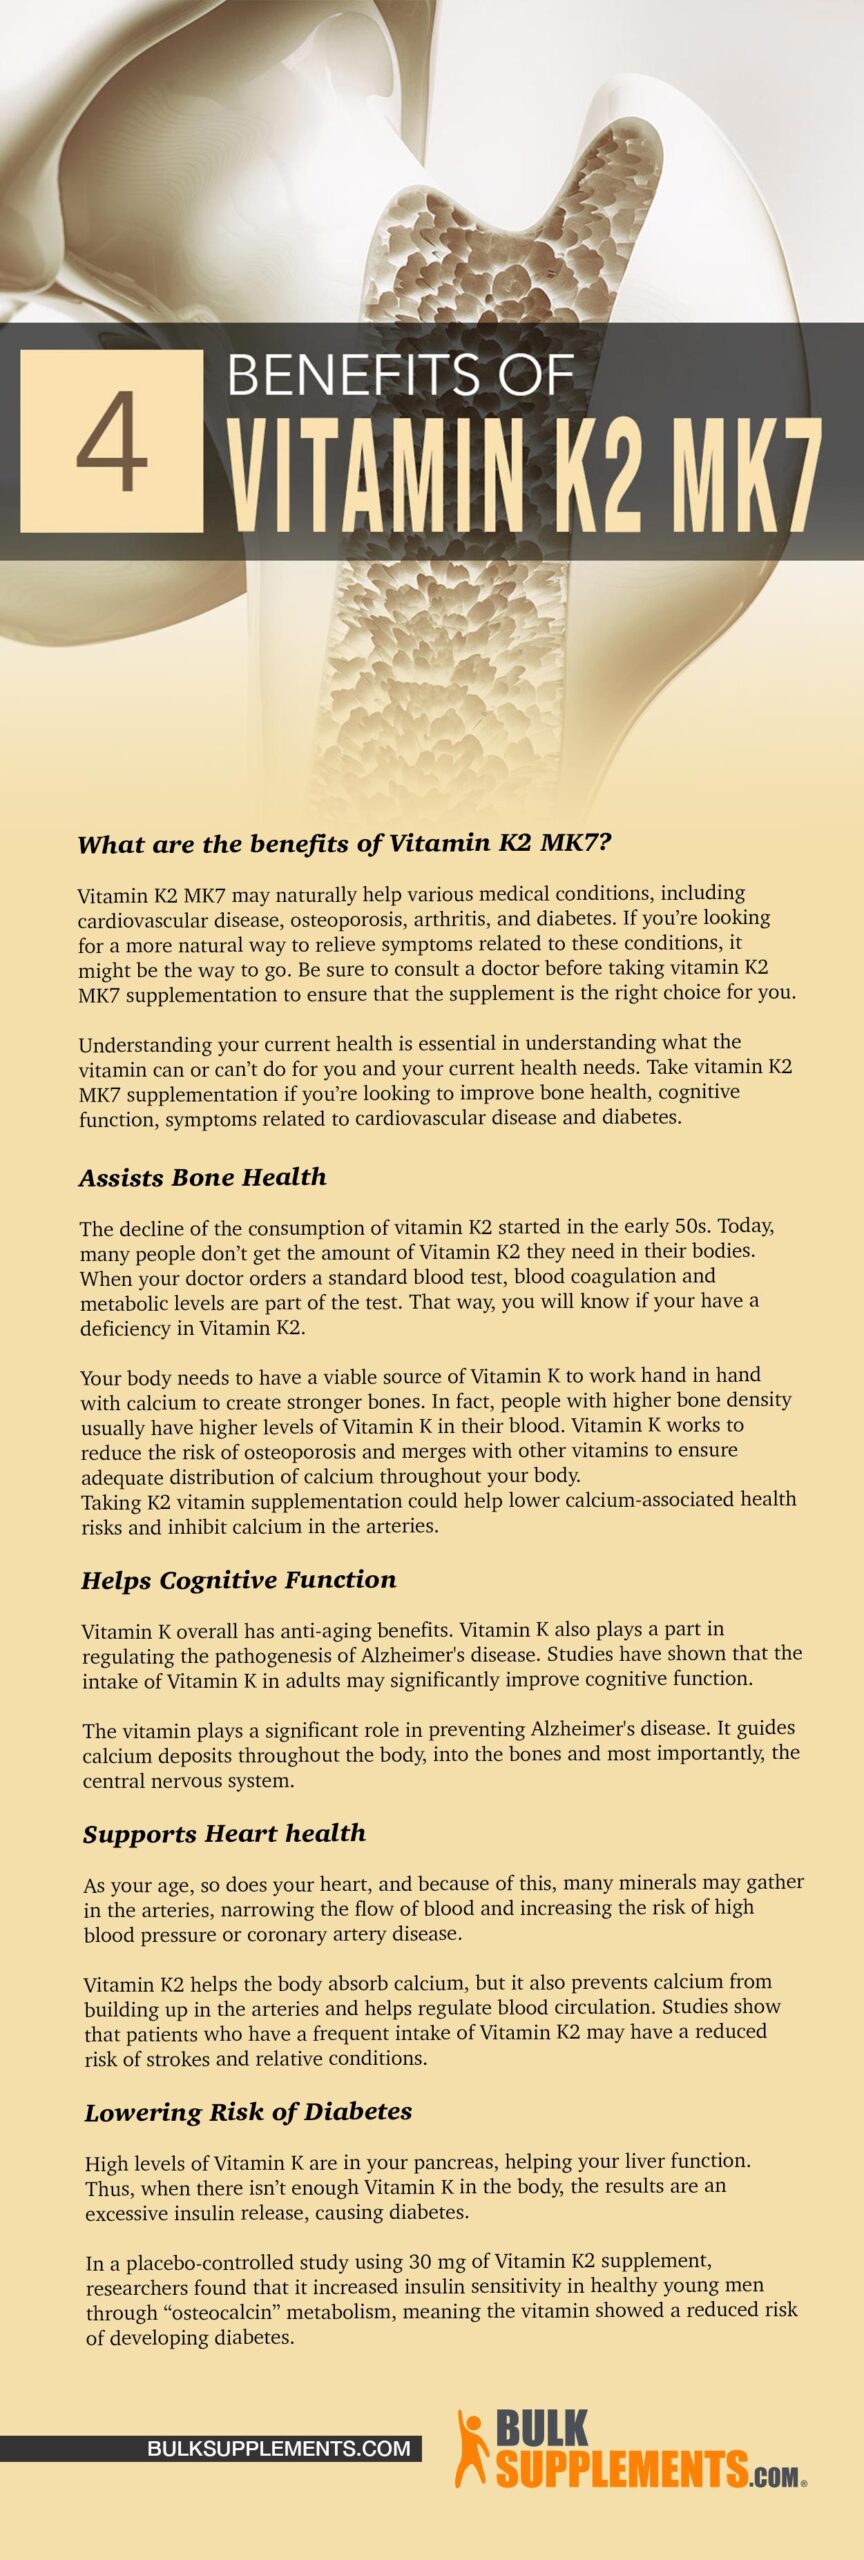 Vitamin K2 MK7 benefits